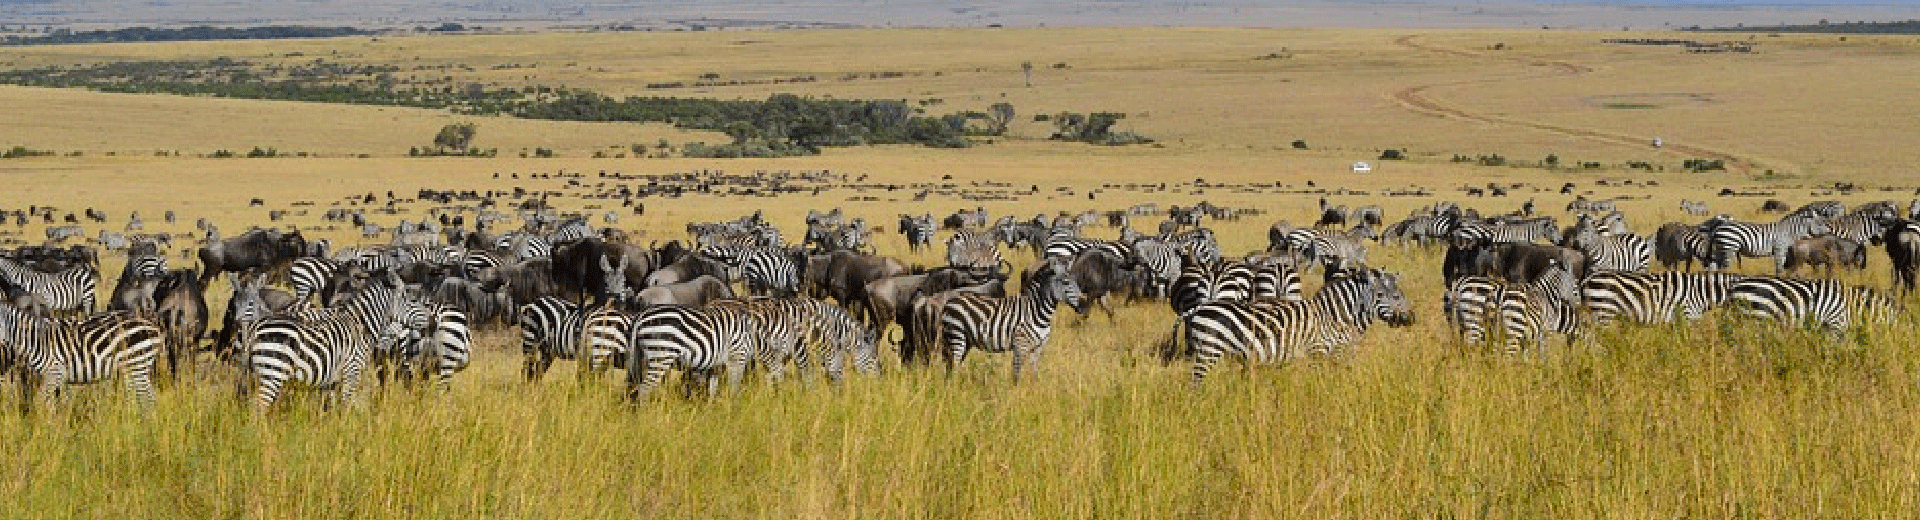 migracao dos animais no safari